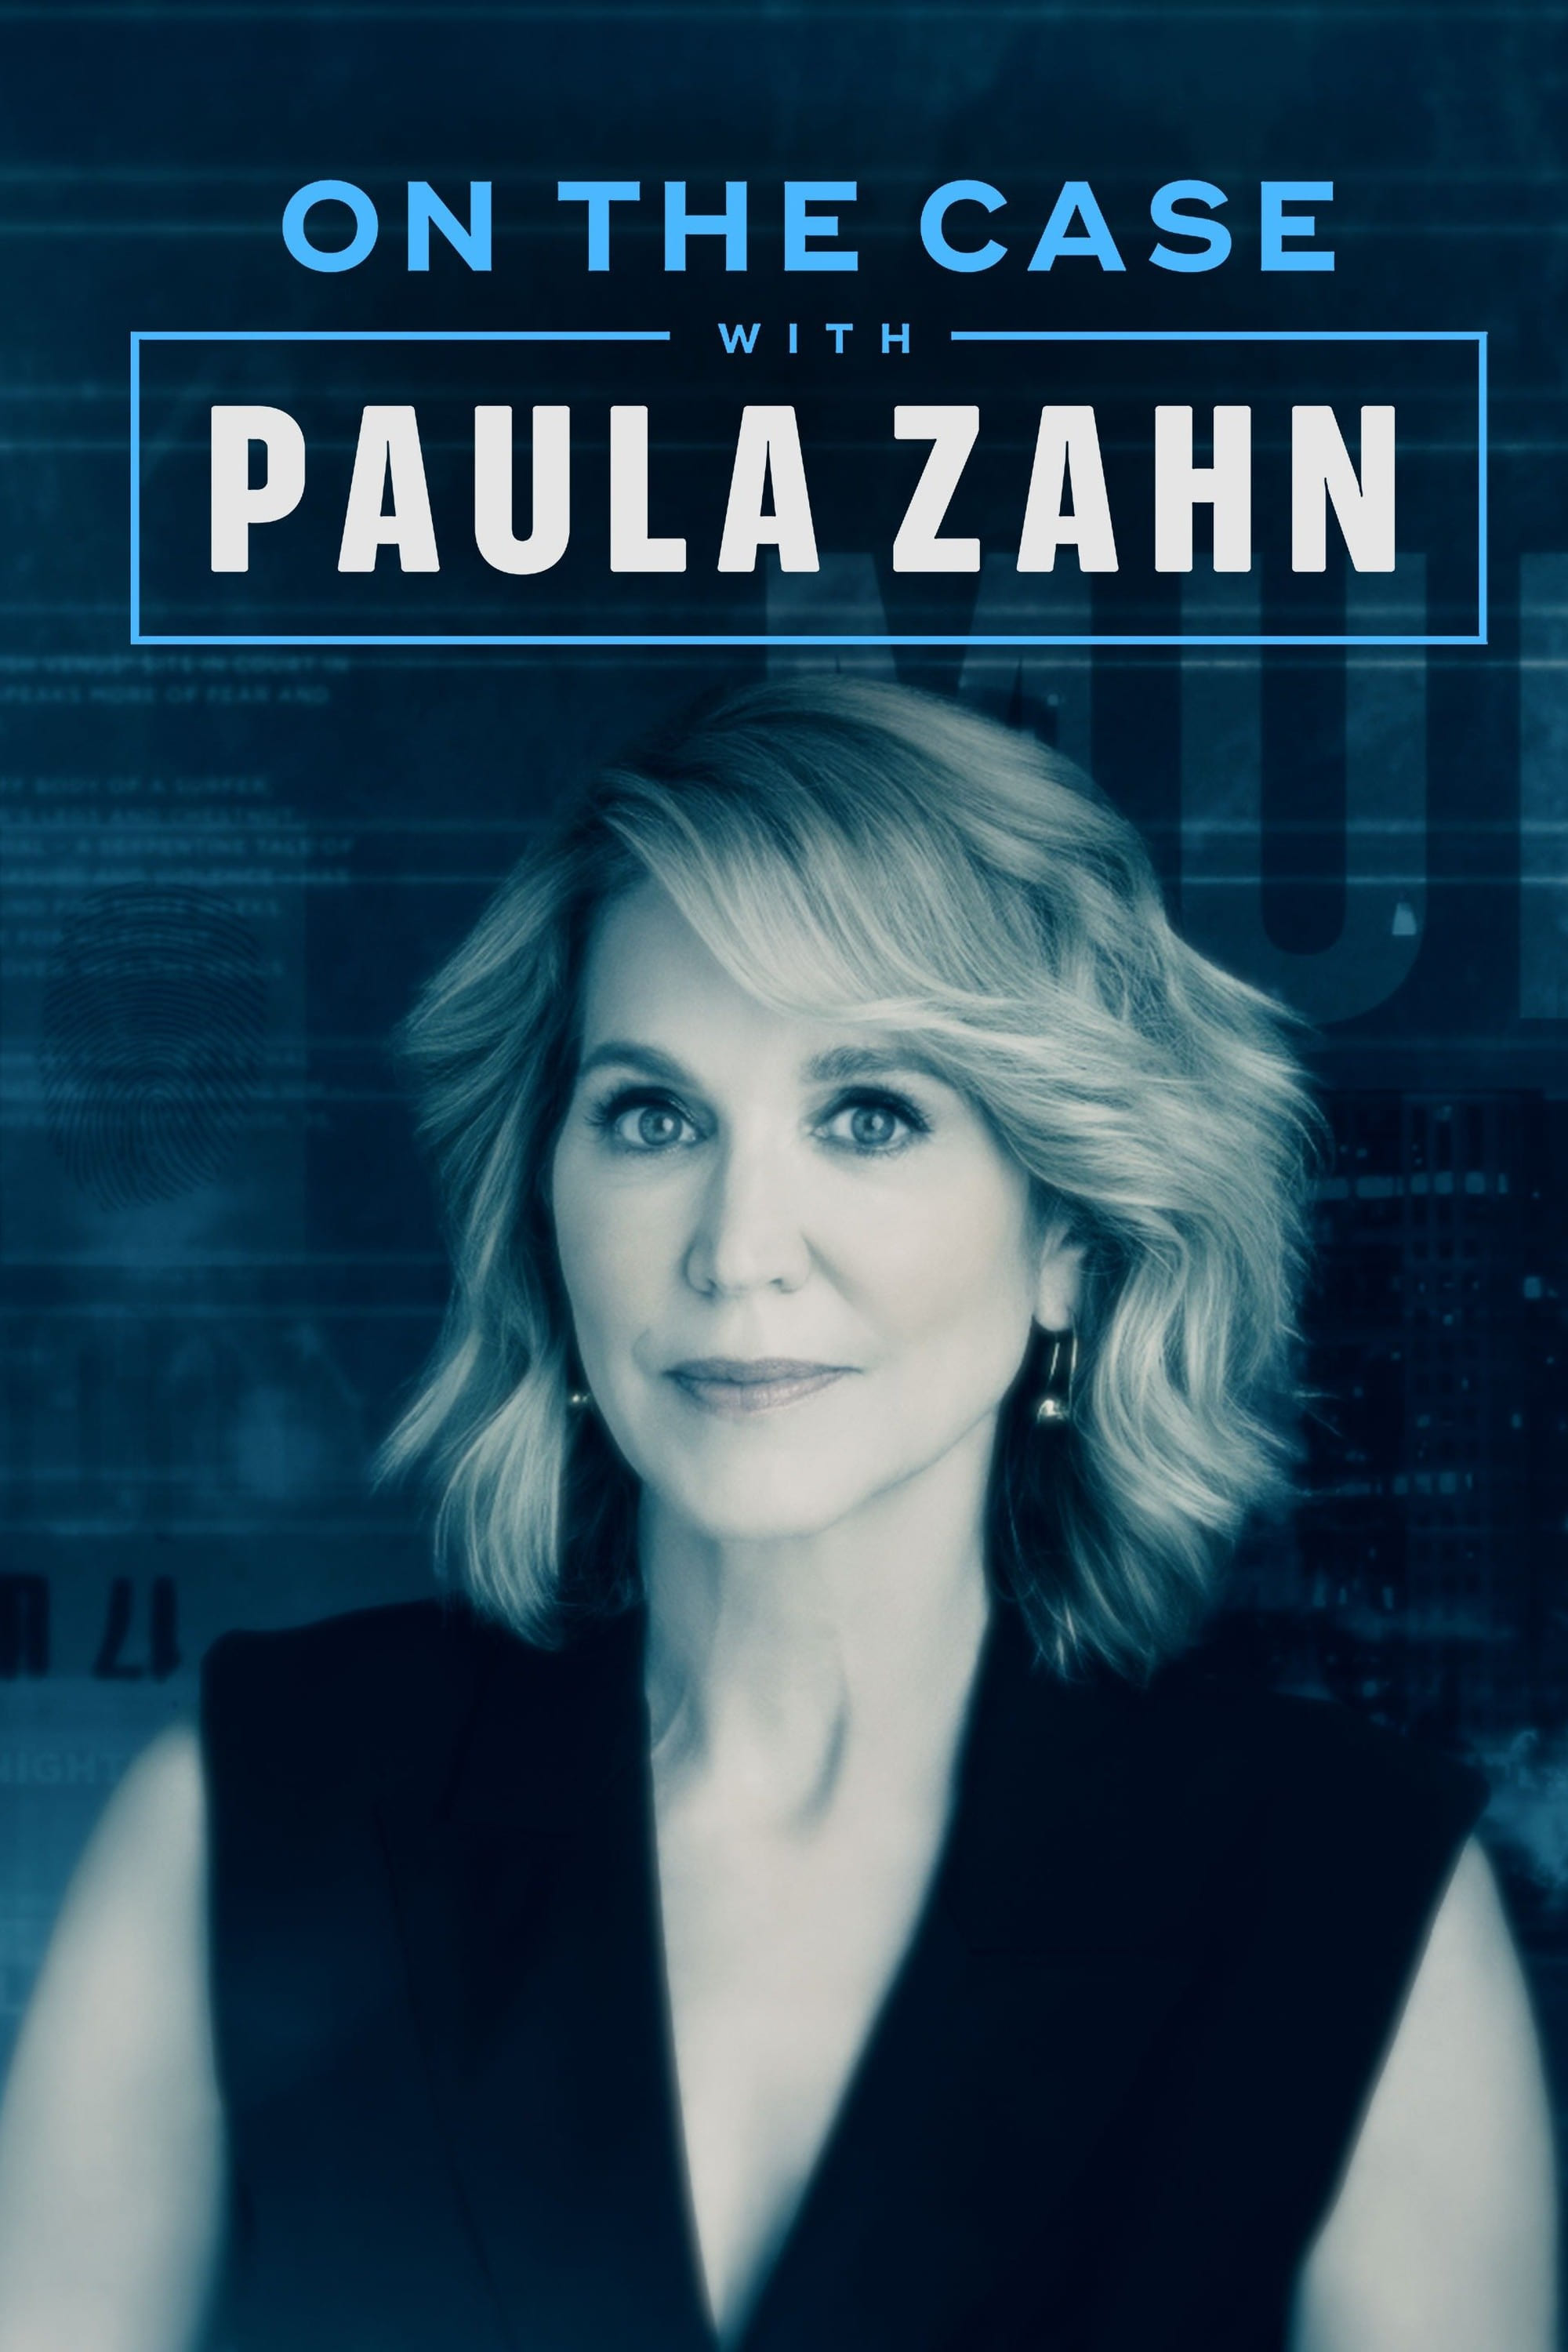 On the Case with Paula Zahn (2009)